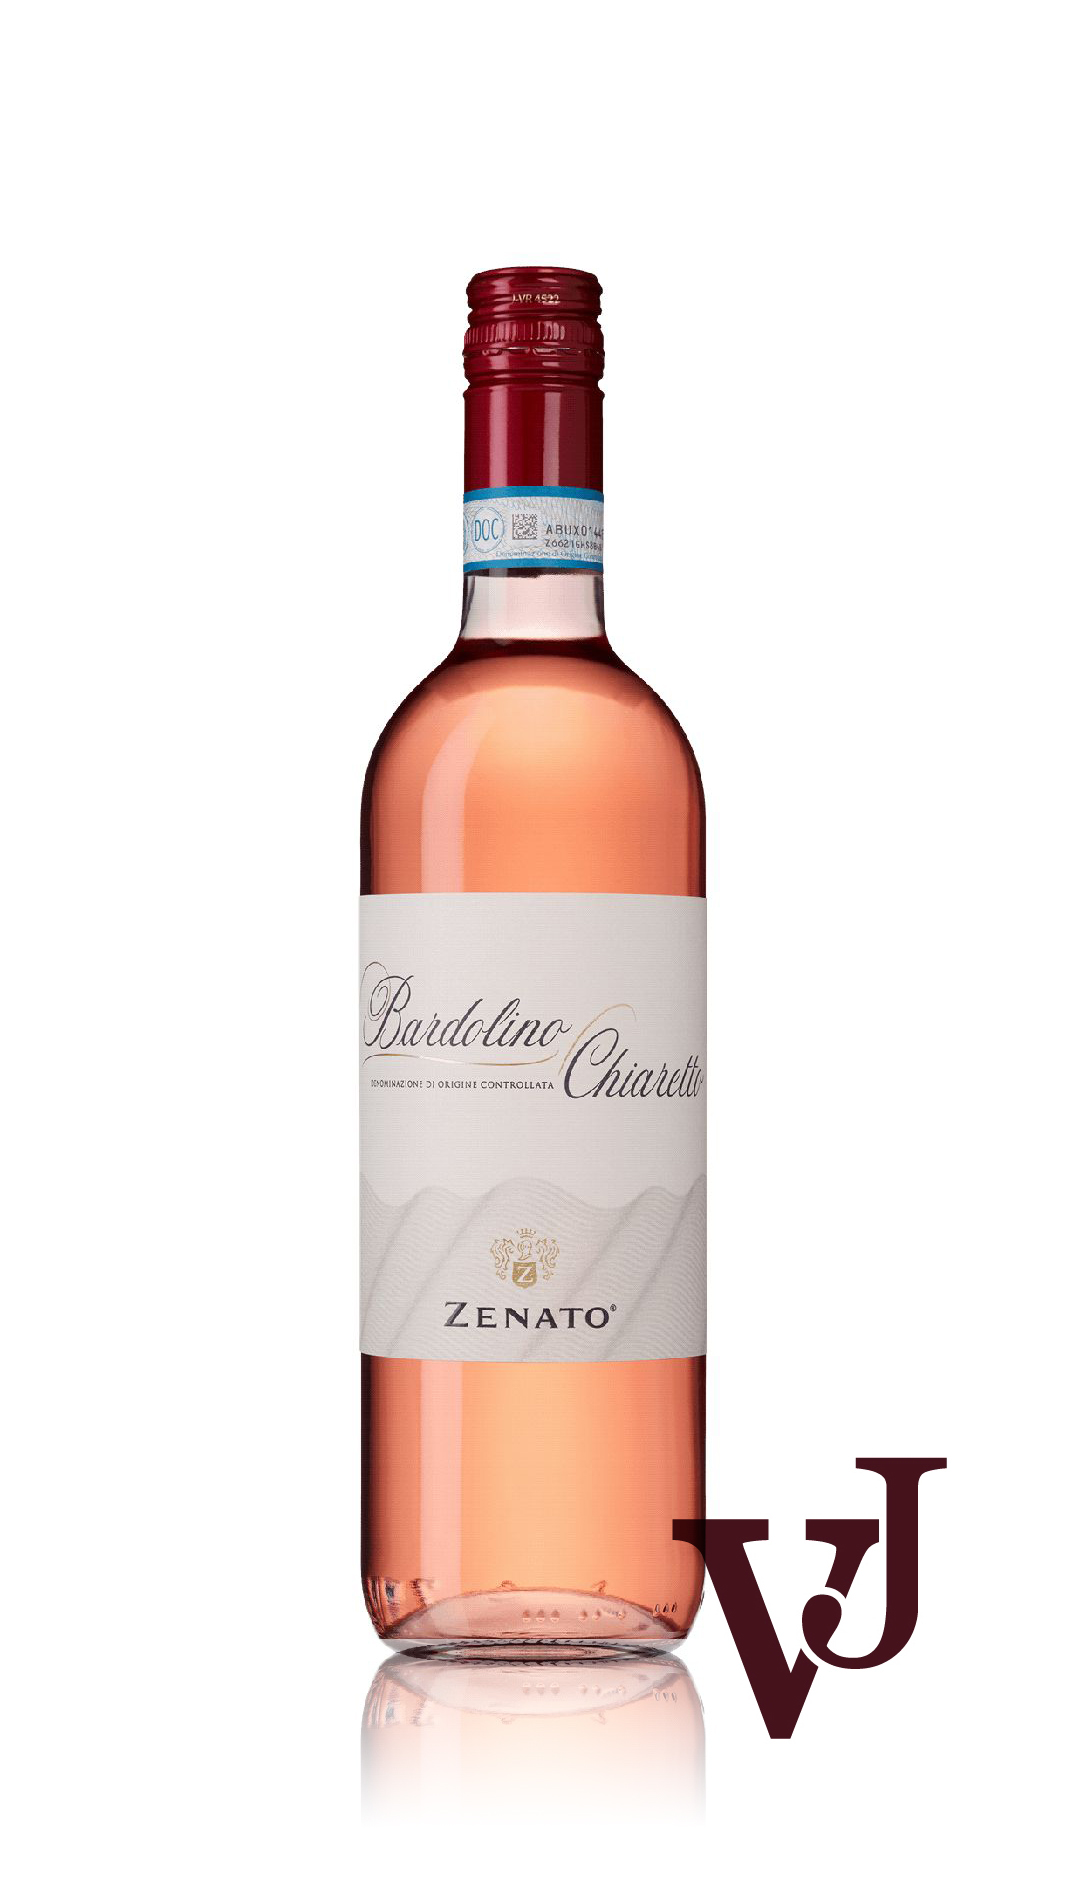 Rosé Vin - Zenato Bardolino Rosé artikel nummer 5139801 från producenten Zenato från området Italien